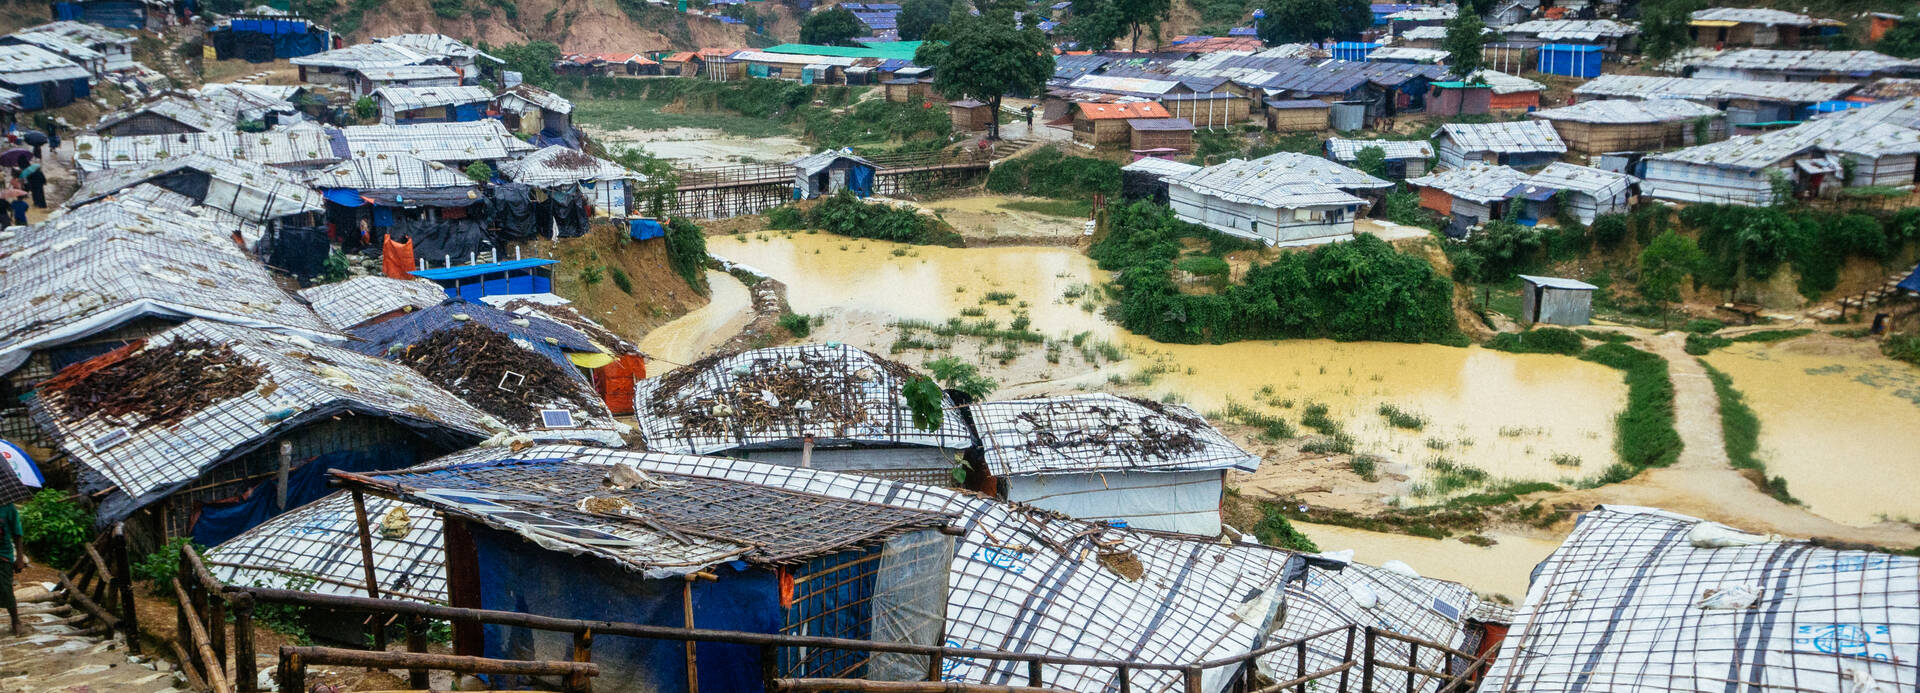 Ein großer Teil des Rohingya-Geflüchtetenlagers in Cox's Bazaar ist nach Zyklon Mocha überflutet und zerstört.